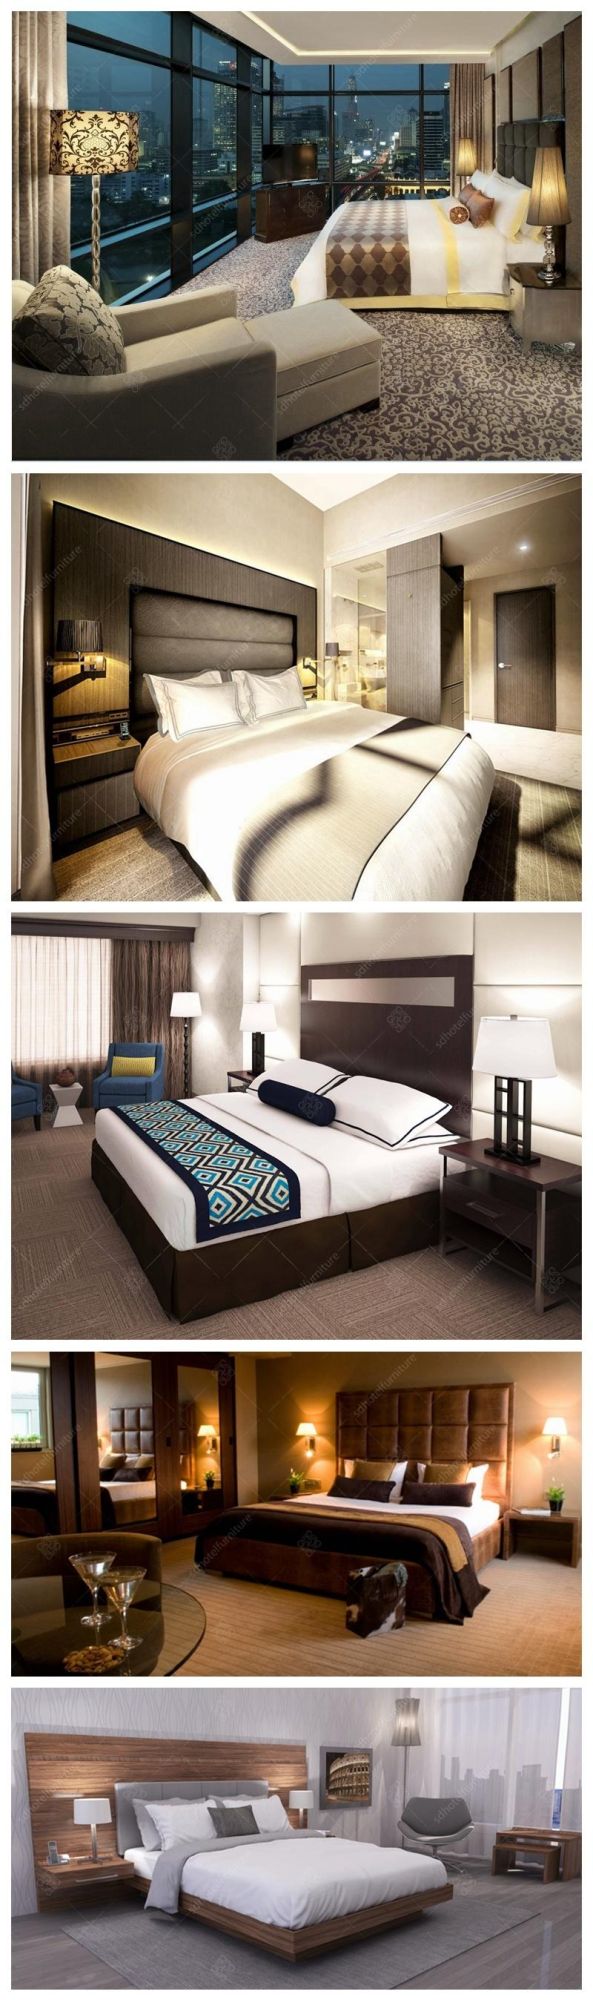 Modern Commercial Hotel Bedroom Furniture Sets for Sale